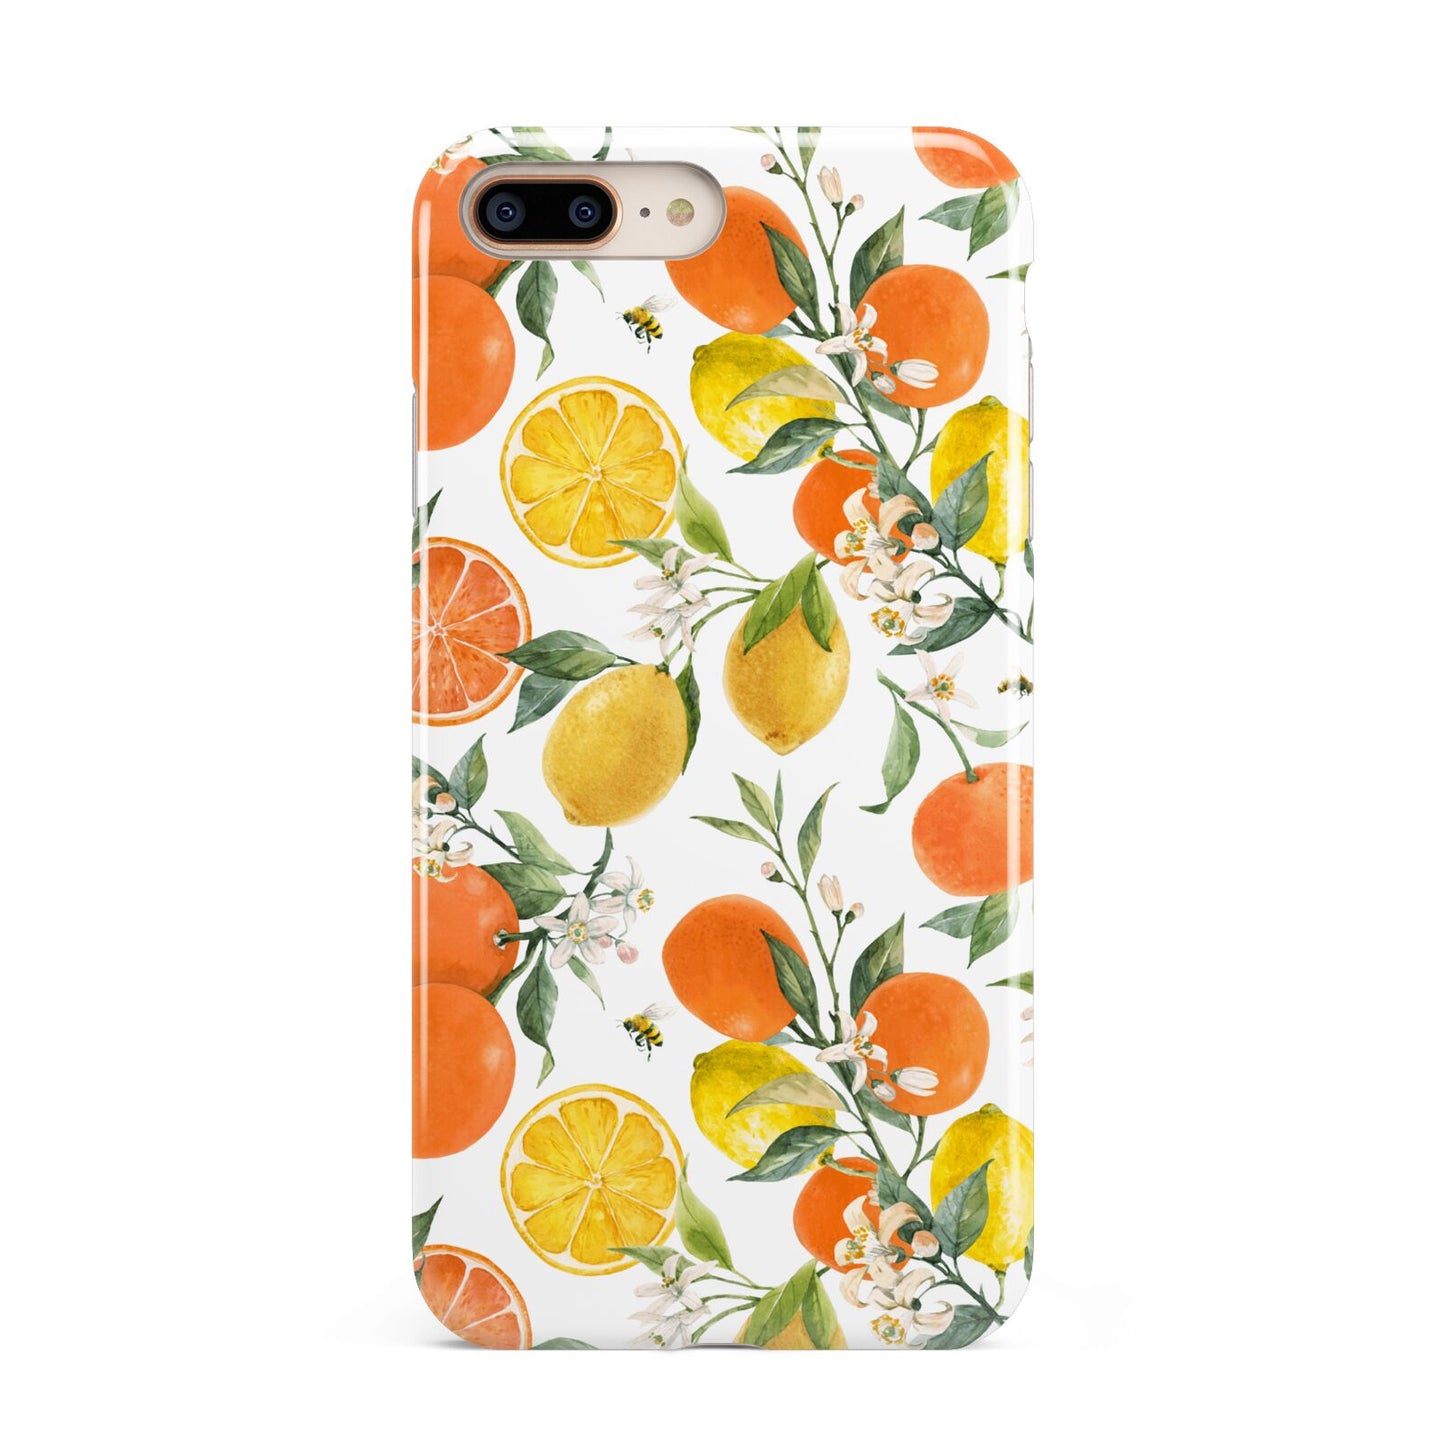 Lemons and Oranges Apple iPhone 7 8 Plus 3D Tough Case